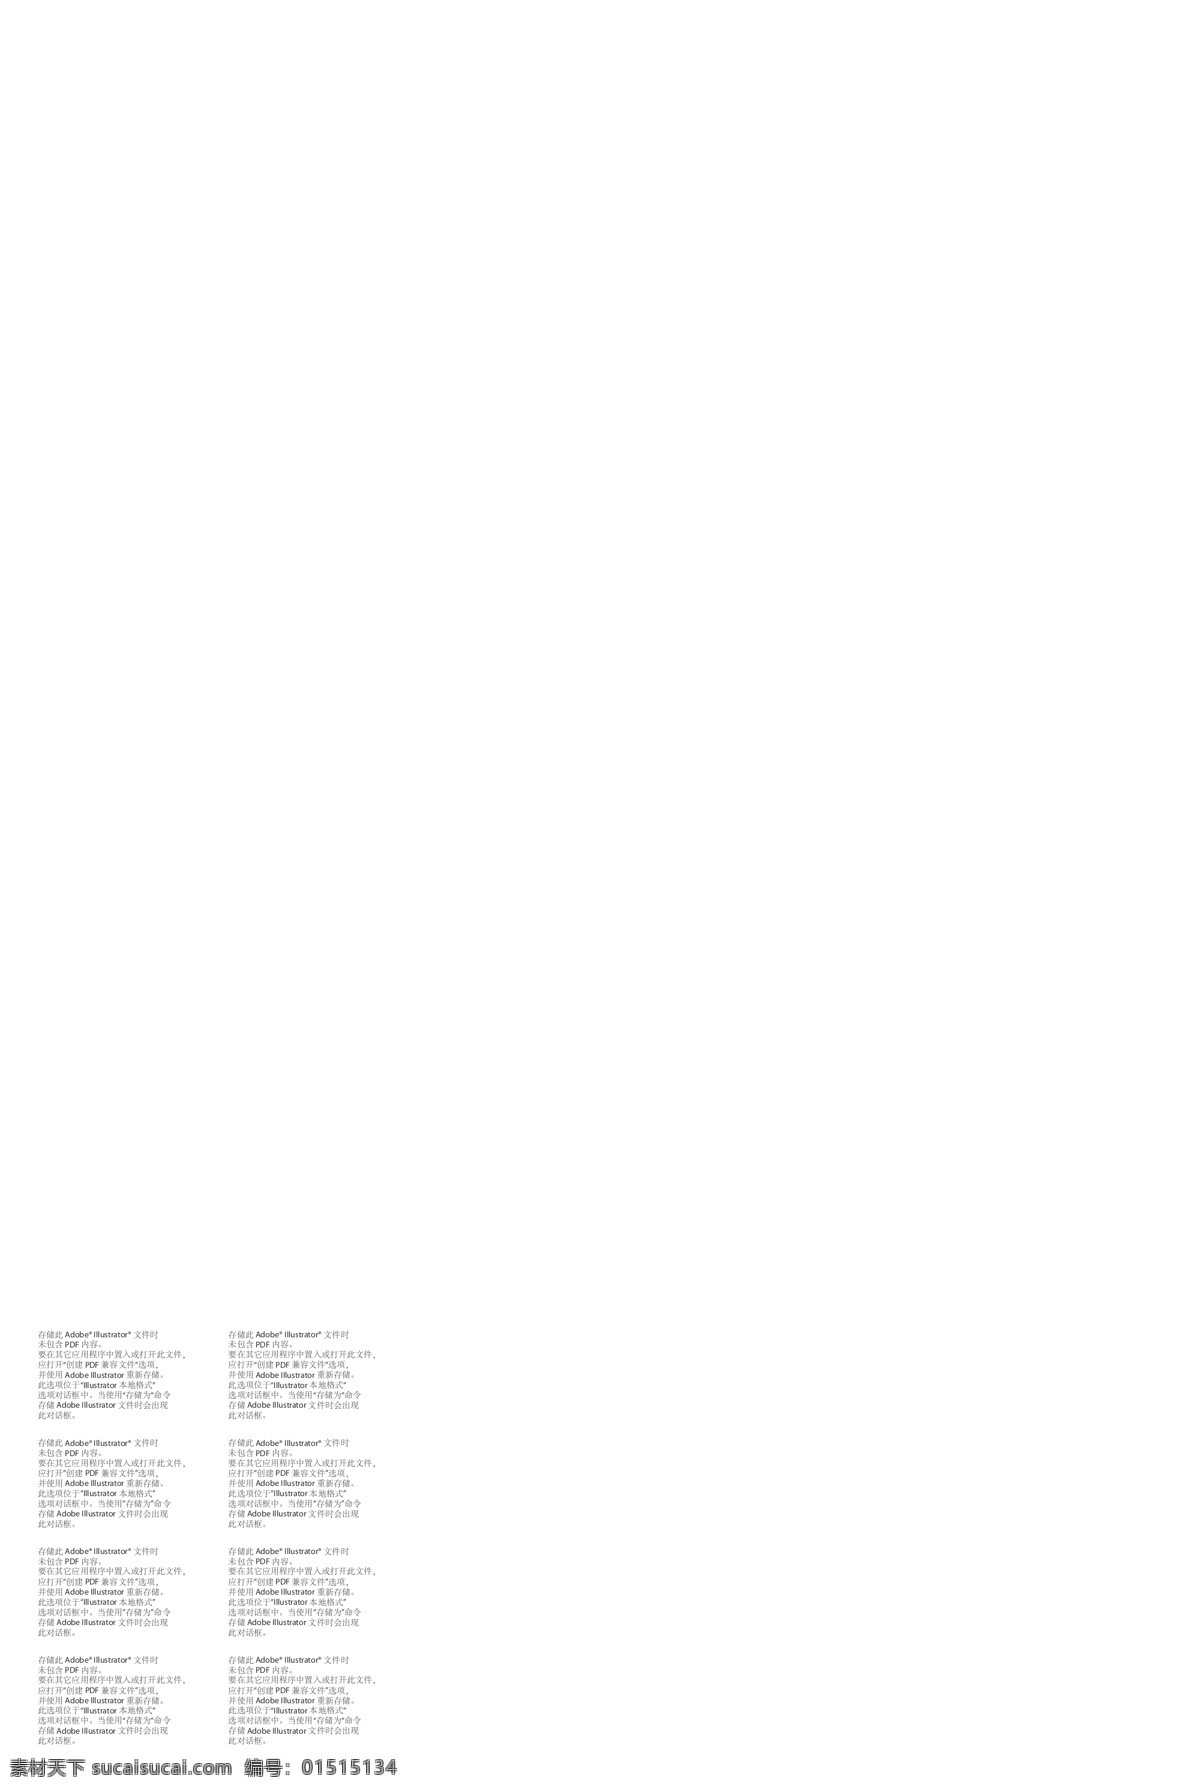 瑞 虎 青春 版 海报 x900 mm 2017 款 万 元 级 t 动力 瑞虎5suv 年 超 长延 保 瑞虎5汽车 白色